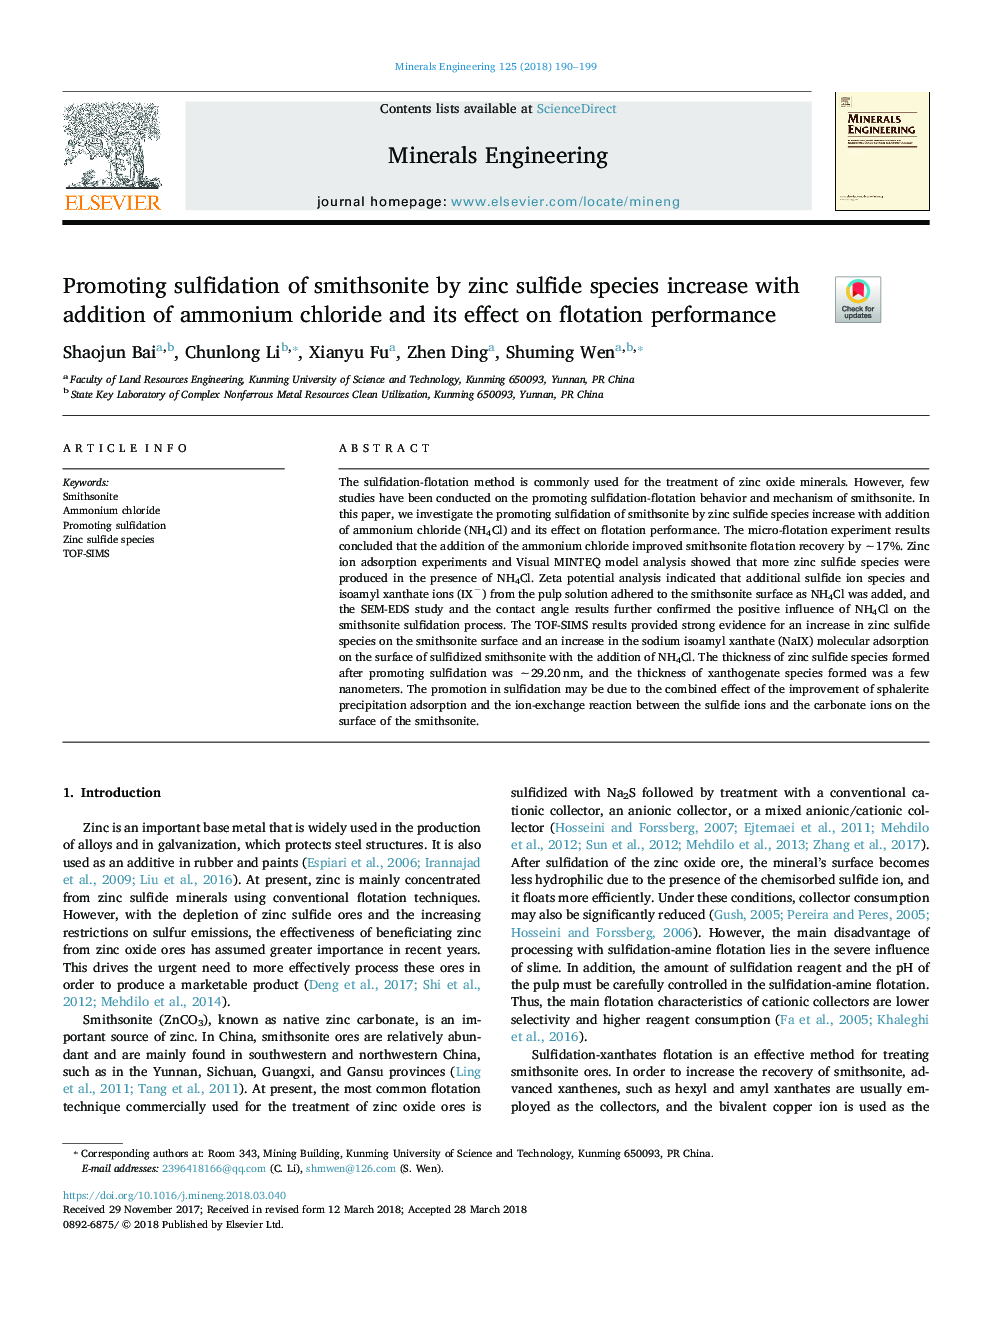 تحریک سولفیدیت اسمیتسونیدها توسط گونه های سولفید روی با افزودن کلرید آمونیوم و تأثیر آن بر عملکرد فلوتاسیون 